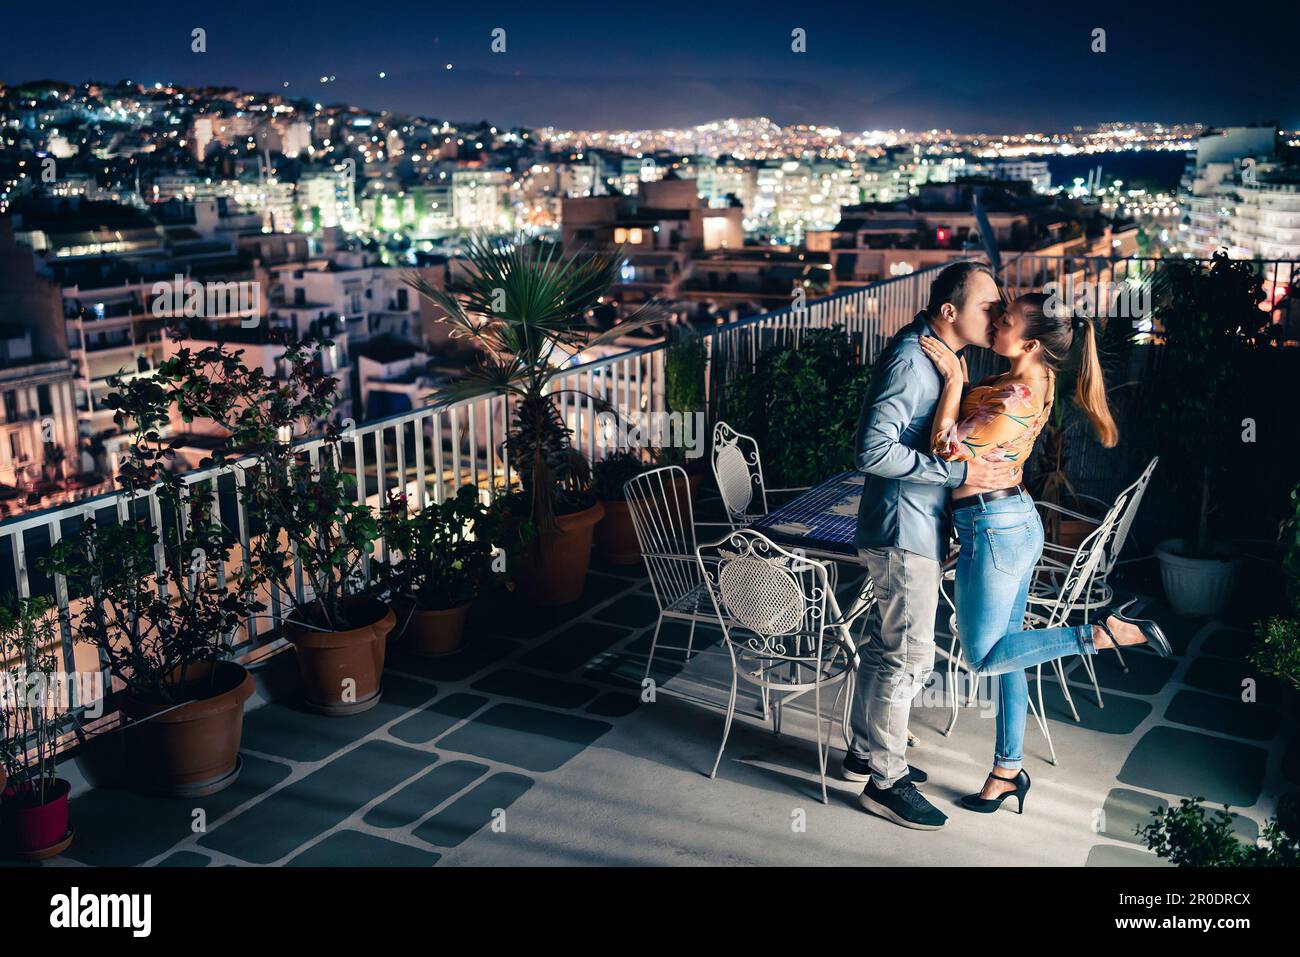 Coppia di notte, vista sulle luci della città. Data romantica o proposta. Uomo e donna baciano e abbracciano sul balcone o sulla terrazza sul tetto. Cielo blu scuro. Foto Stock